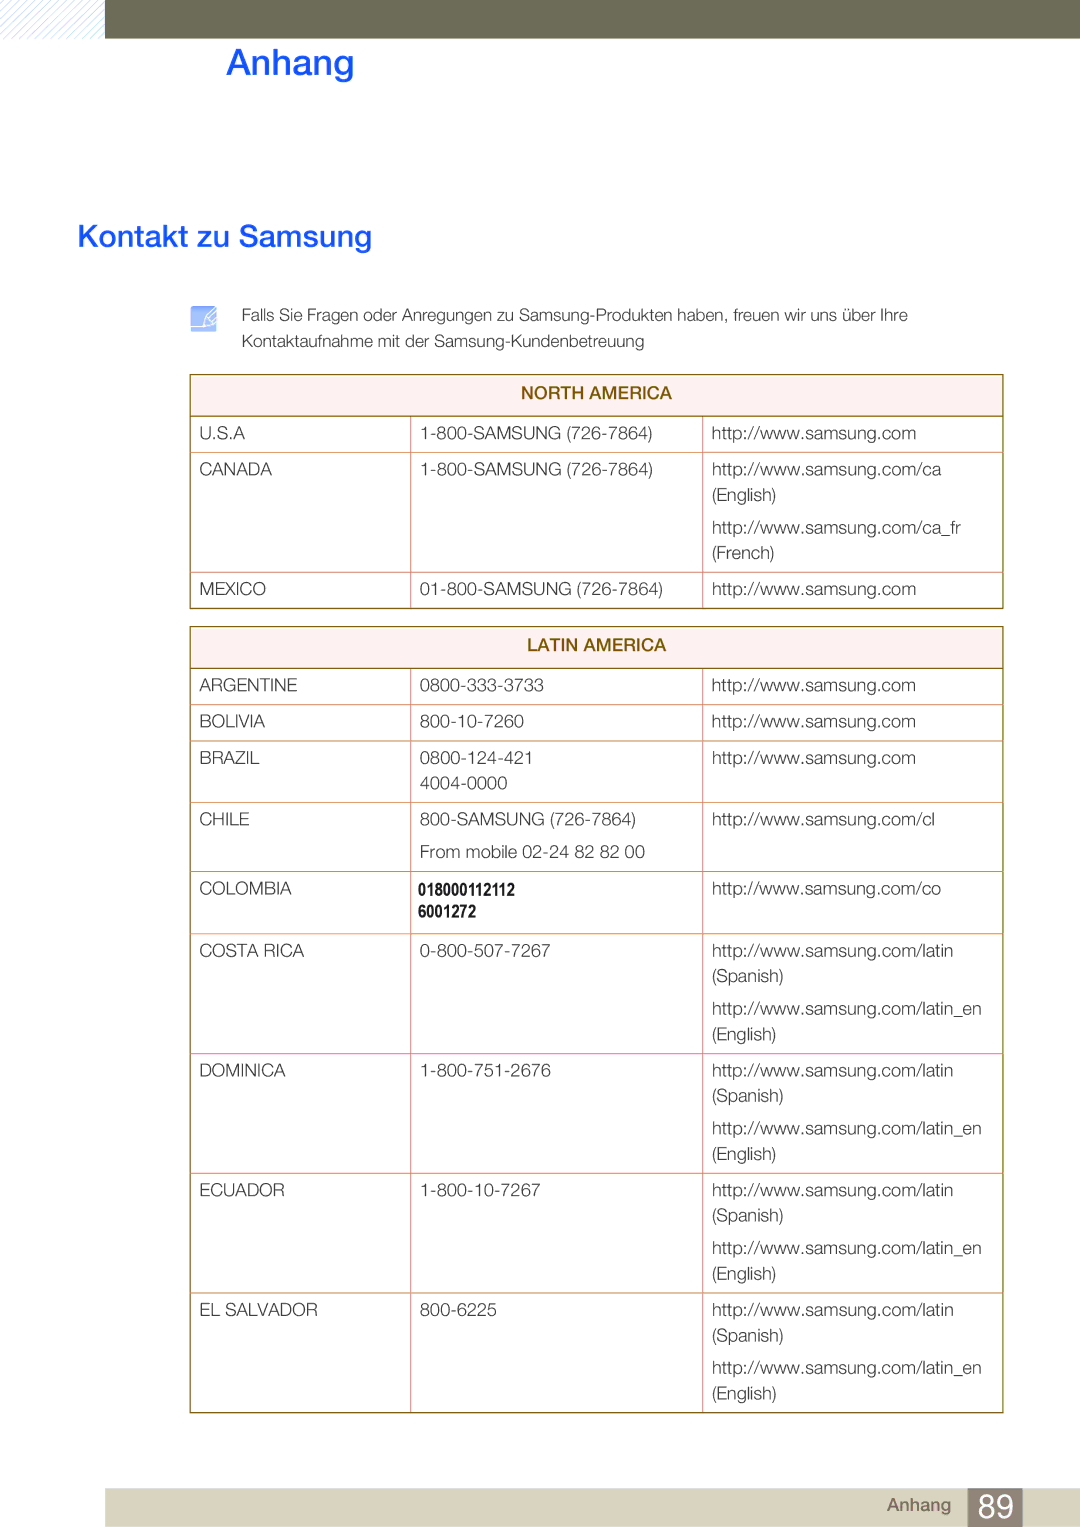 Samsung LS24C550VL/EN, LS24C550ML/EN, LS23C550HS/EN manual Anhang, Kontakt zu Samsung 